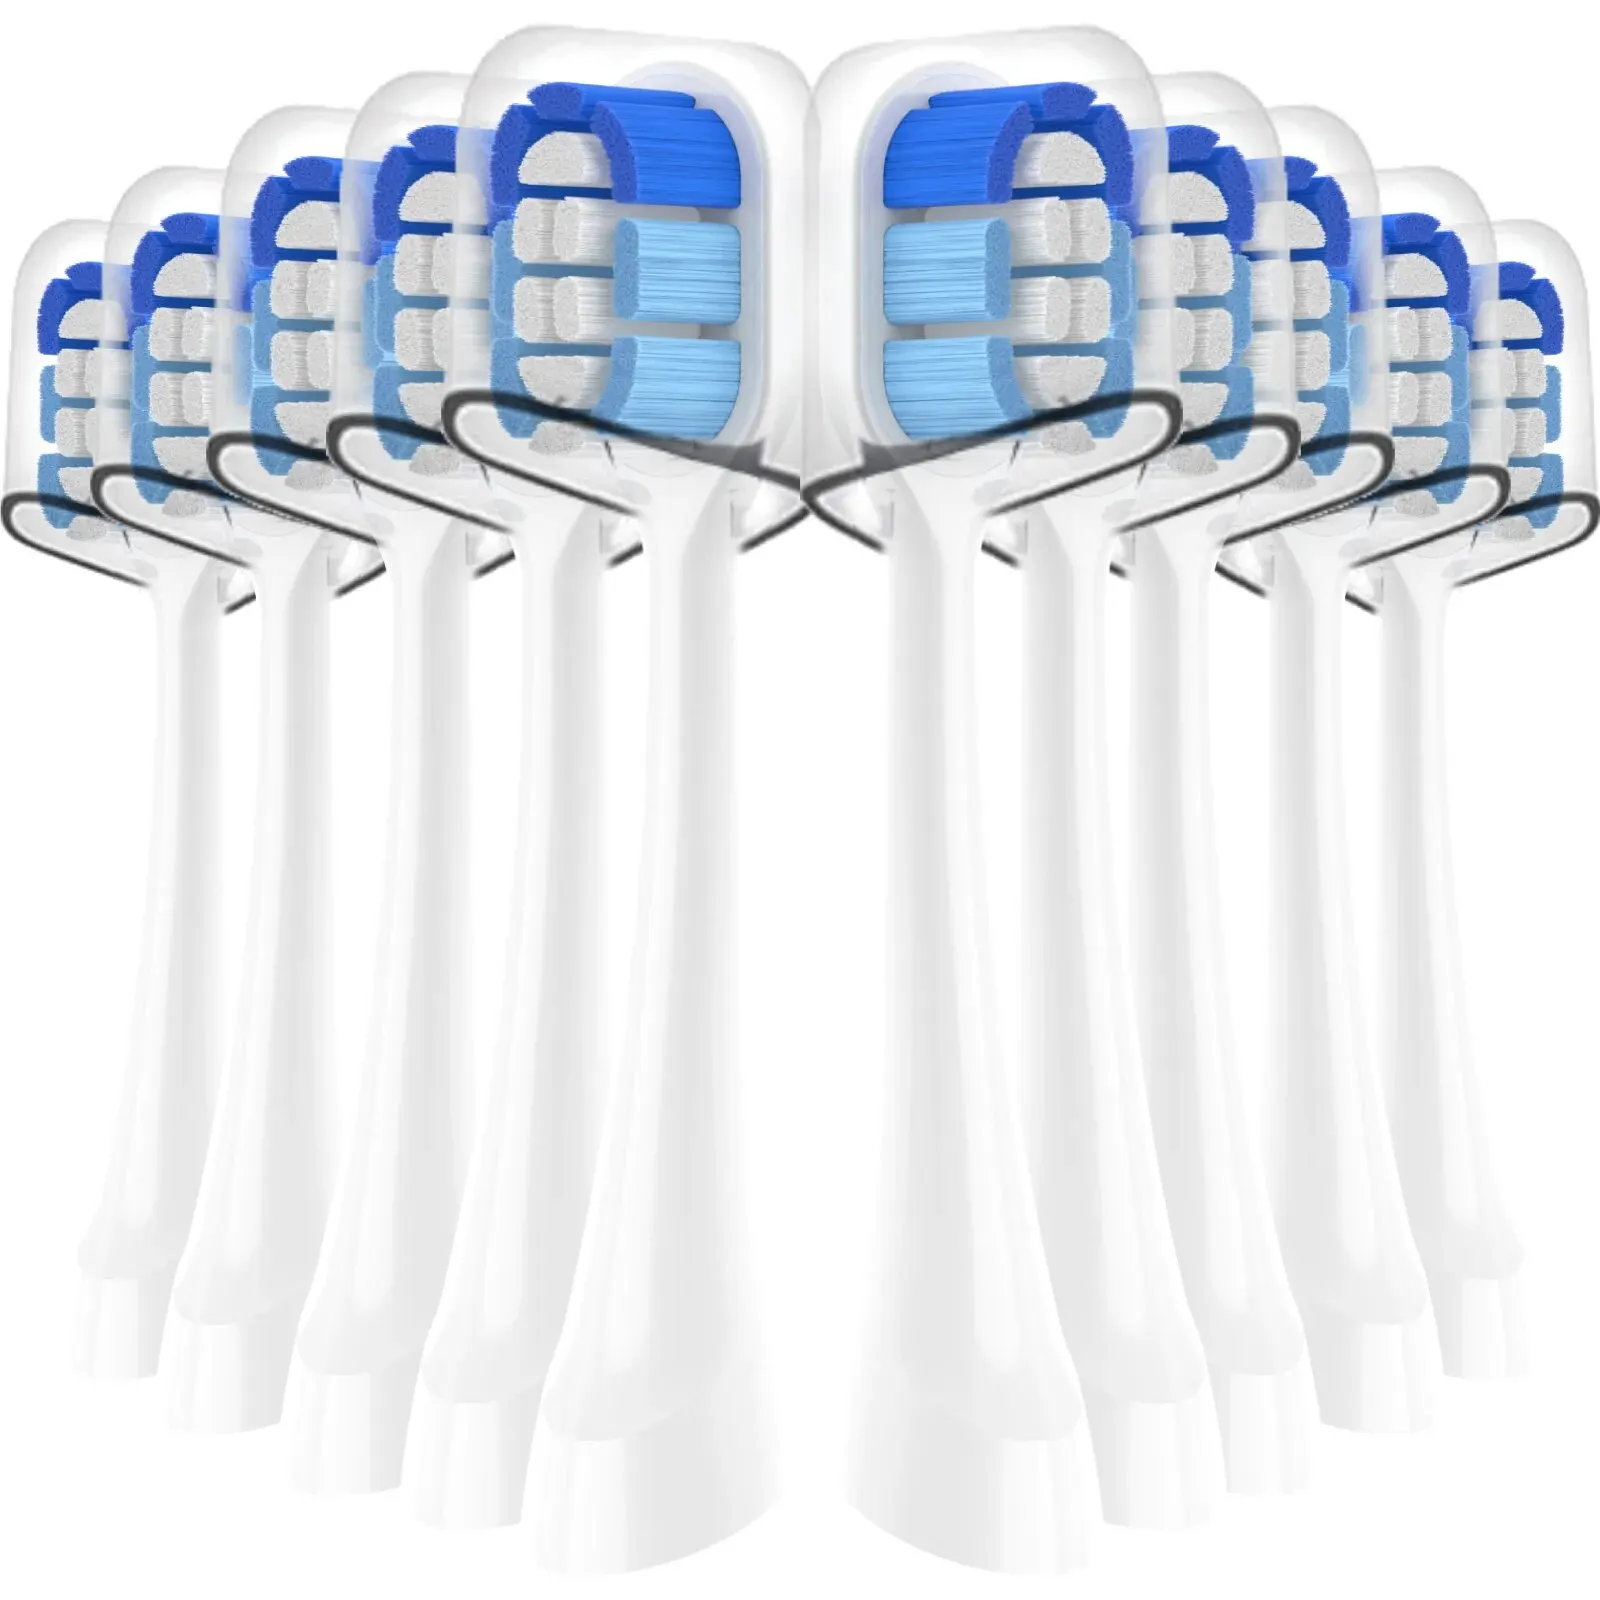 Paquete de cabezales de repuesto para cepillo de dientes Oral-B Clic, compatibles con Oral-B, Ultimate Clean, 10 unidades